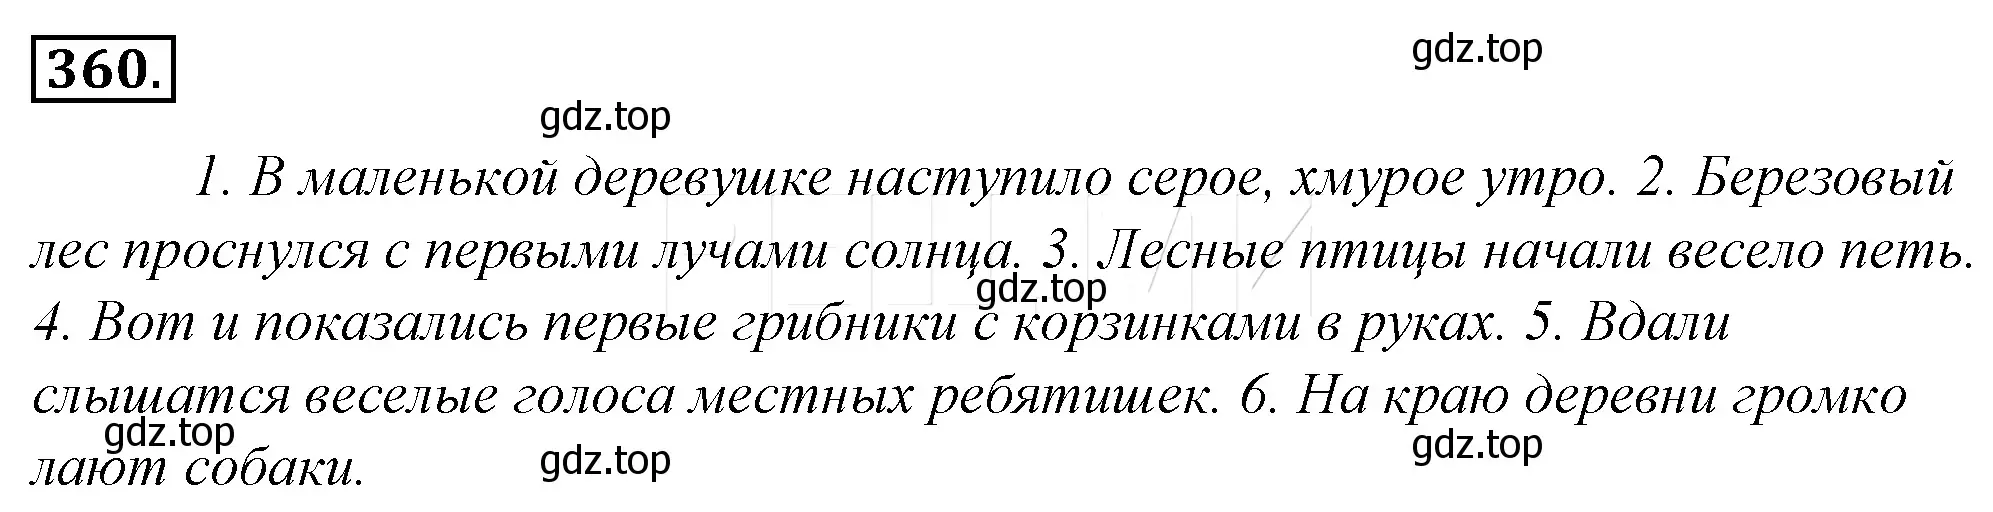 Решение 4. номер 25 (страница 33) гдз по русскому языку 10-11 класс Гольцова, Шамшин, учебник 2 часть